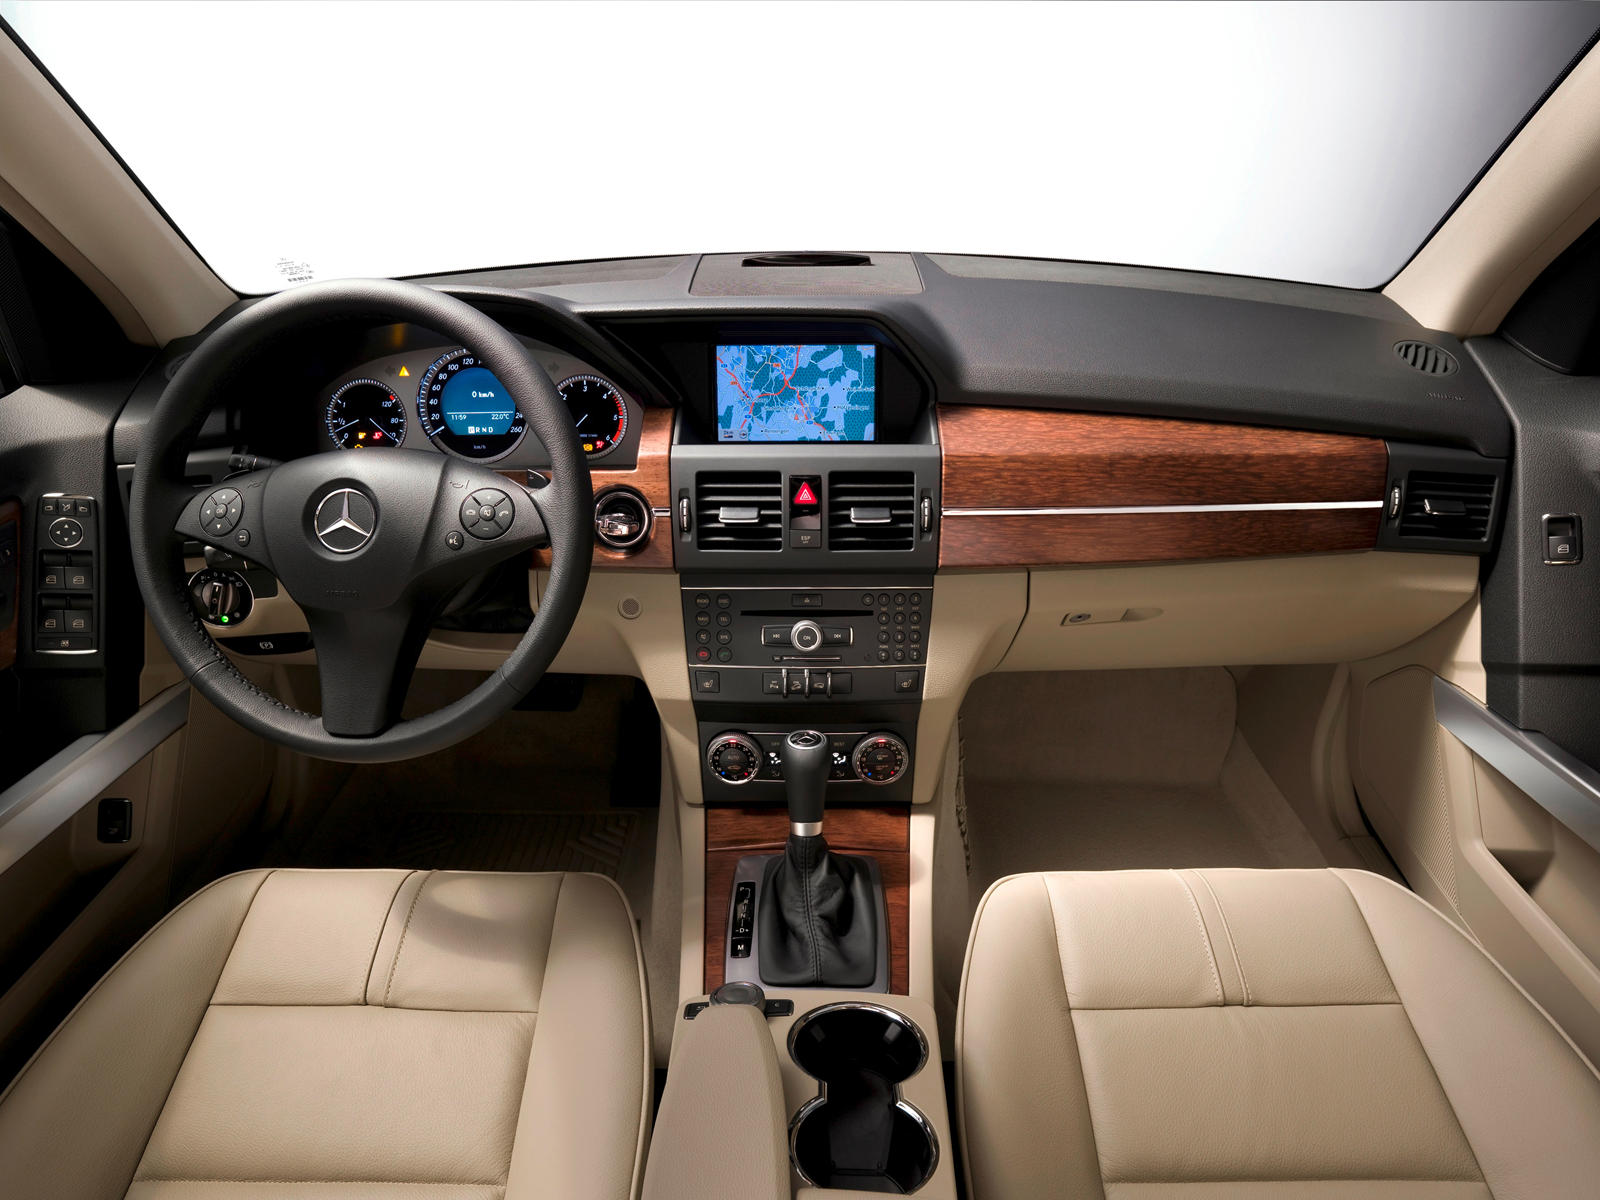 2011 Mercedes-Benz GLK-Class Interior Photos | CarBuzz